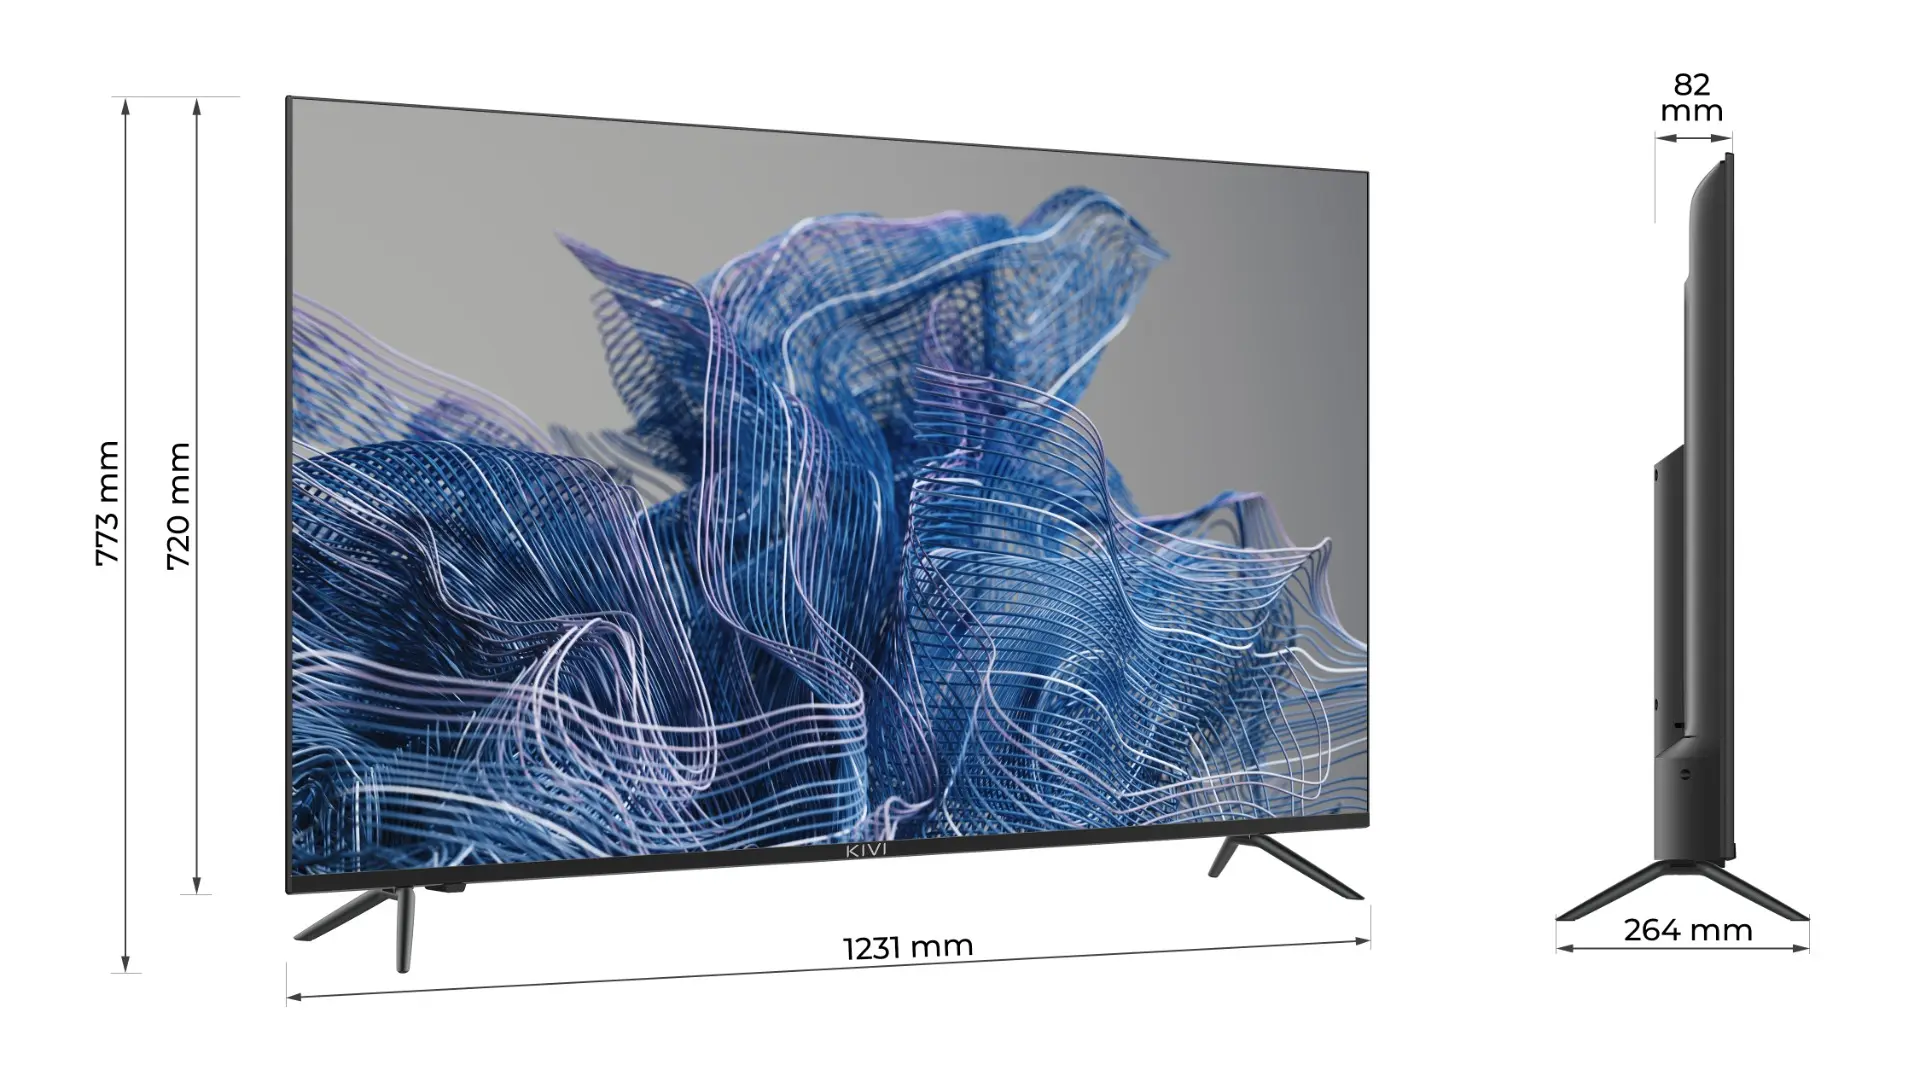 Televizor LED Smart, KIVI 55U740NB, 139 cm, 4K UHD, Android TV, Clasa G, Negru